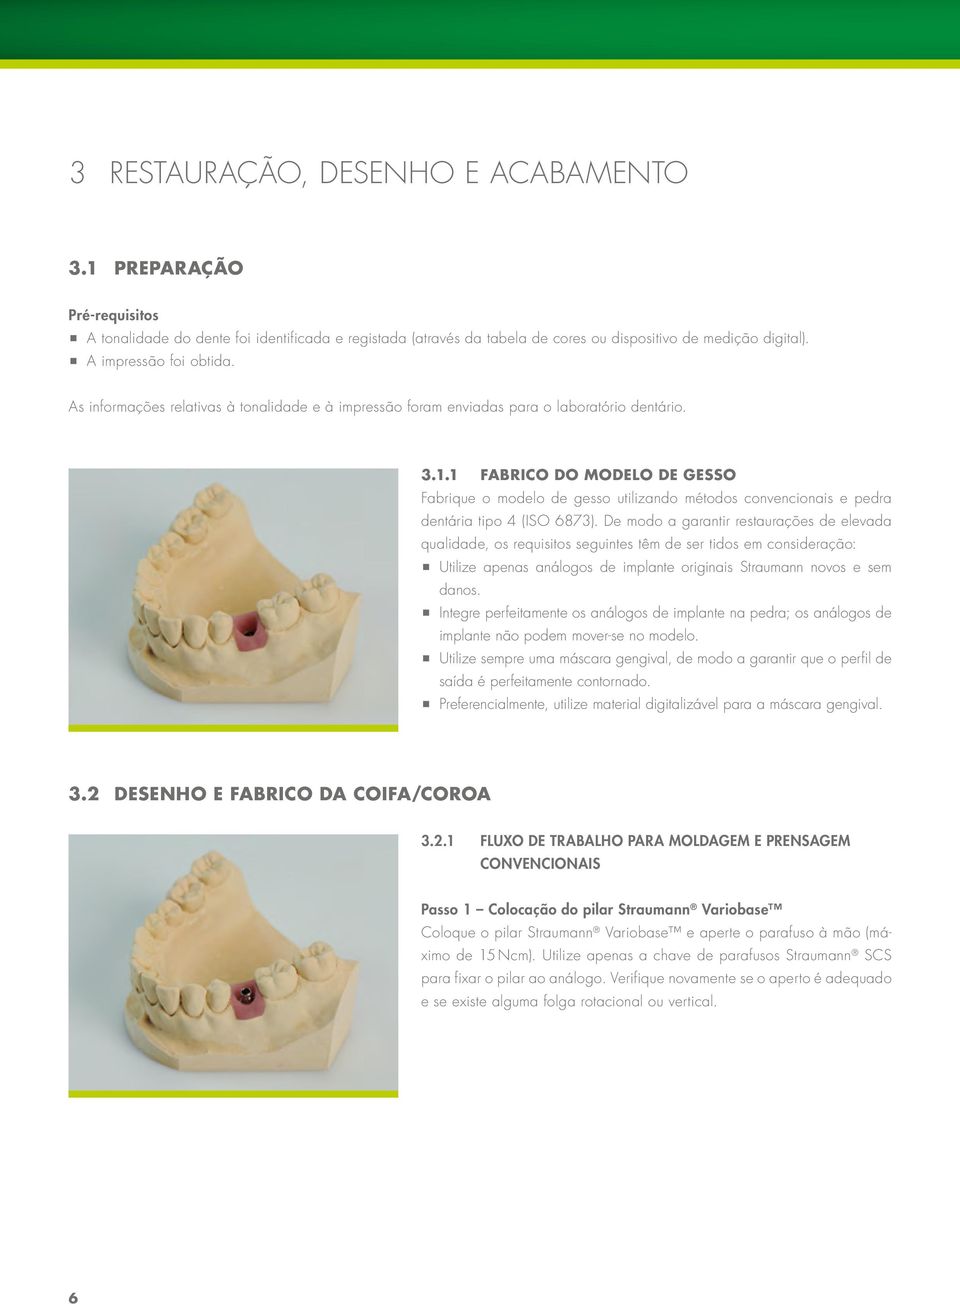 1 FABRICO DO MODELO DE GESSO Fabrique o modelo de gesso utilizando métodos convencionais e pedra dentária tipo 4 (ISO 6873).